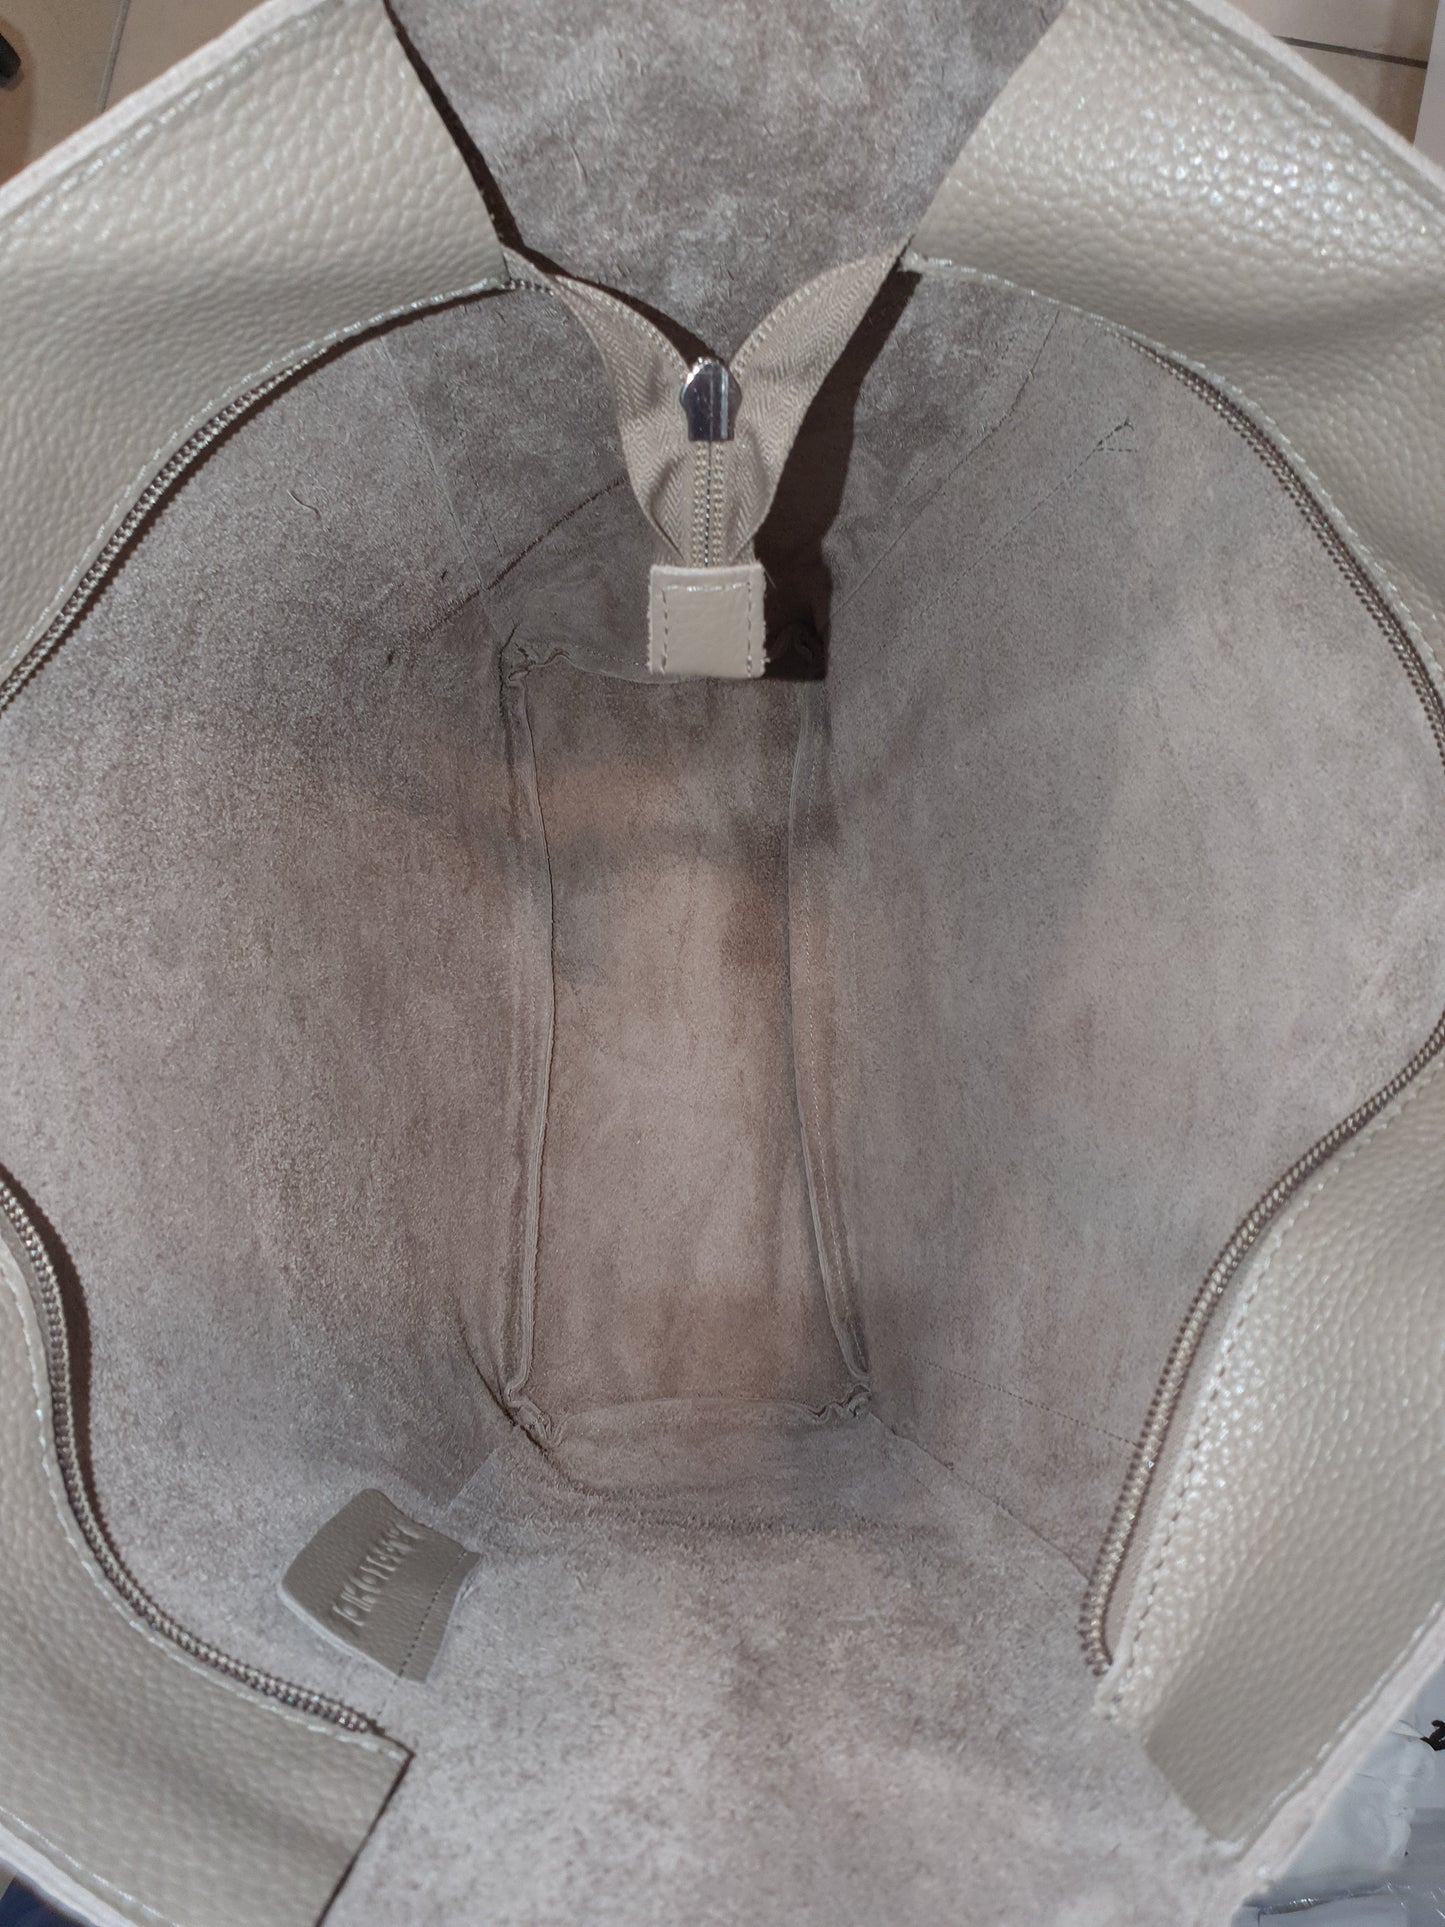 Rugged Hide RH-4914 Laurel Leather Shopper Bag